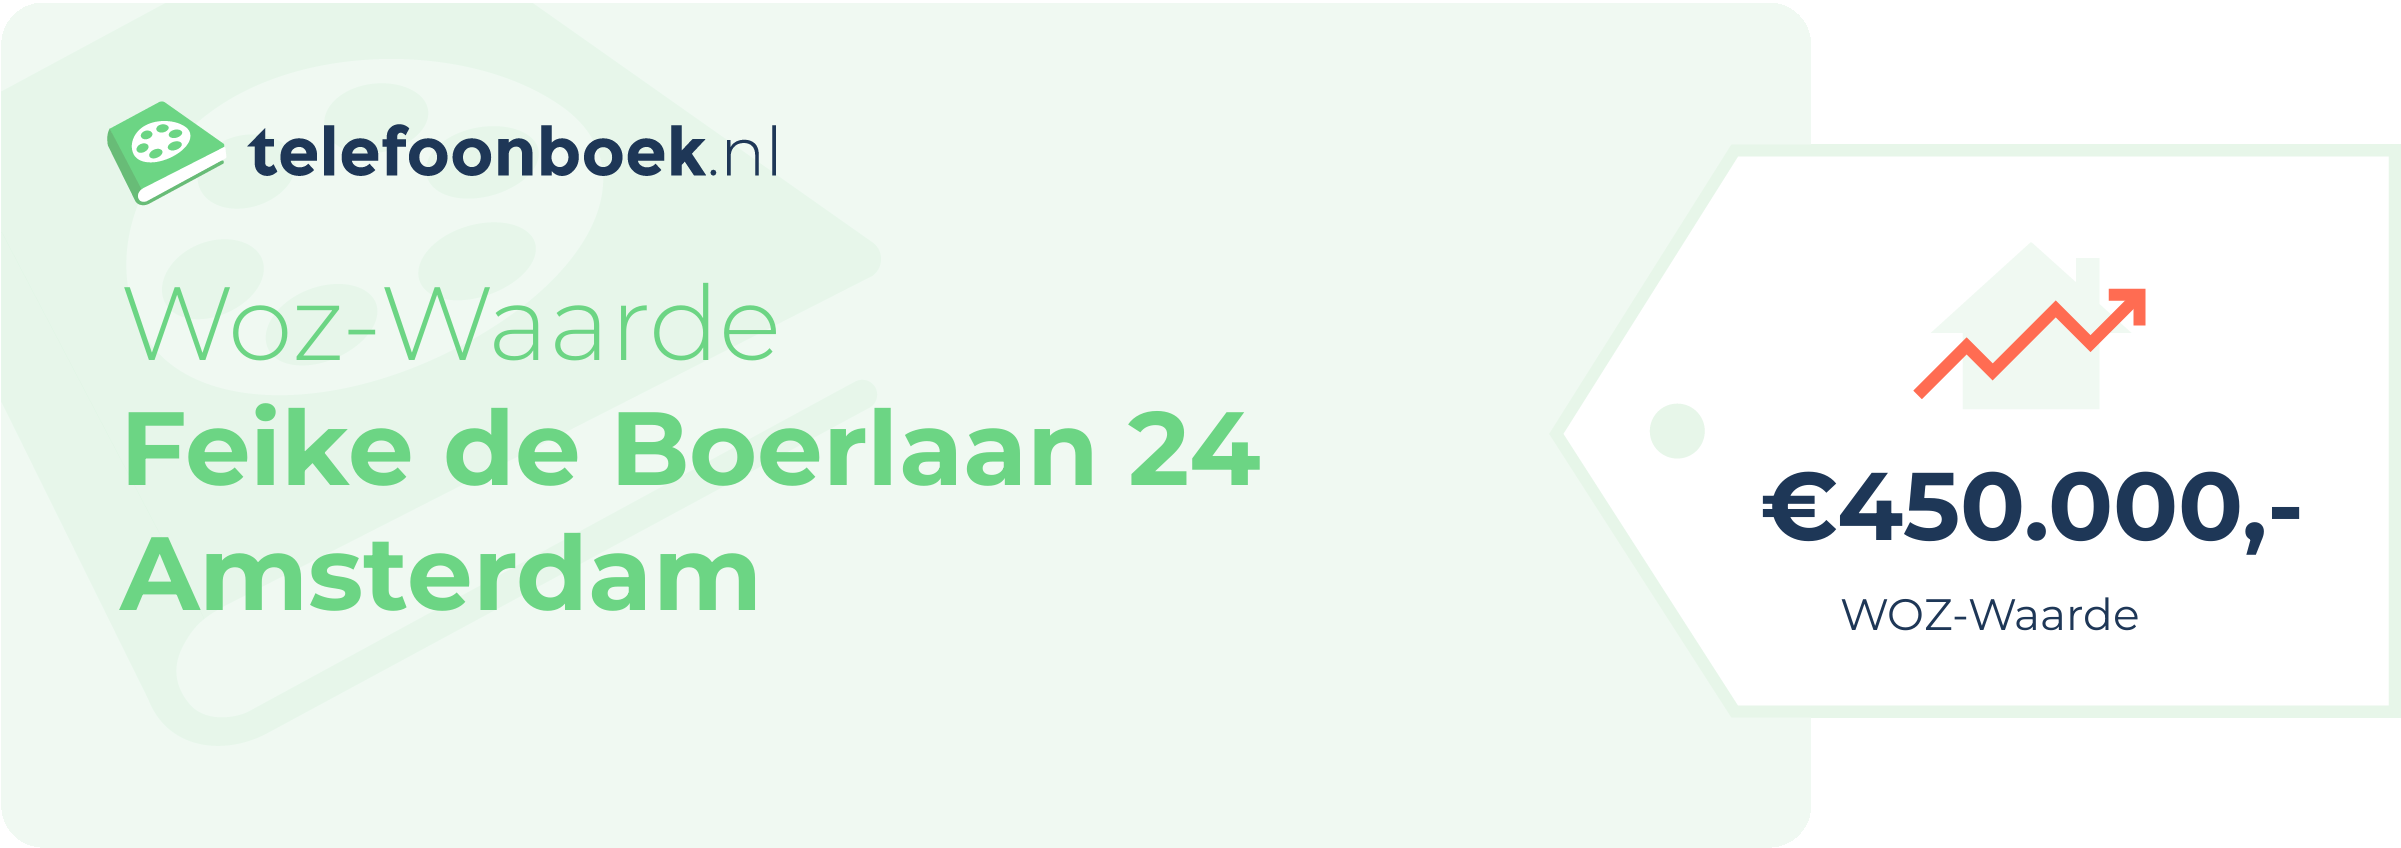 WOZ-waarde Feike De Boerlaan 24 Amsterdam